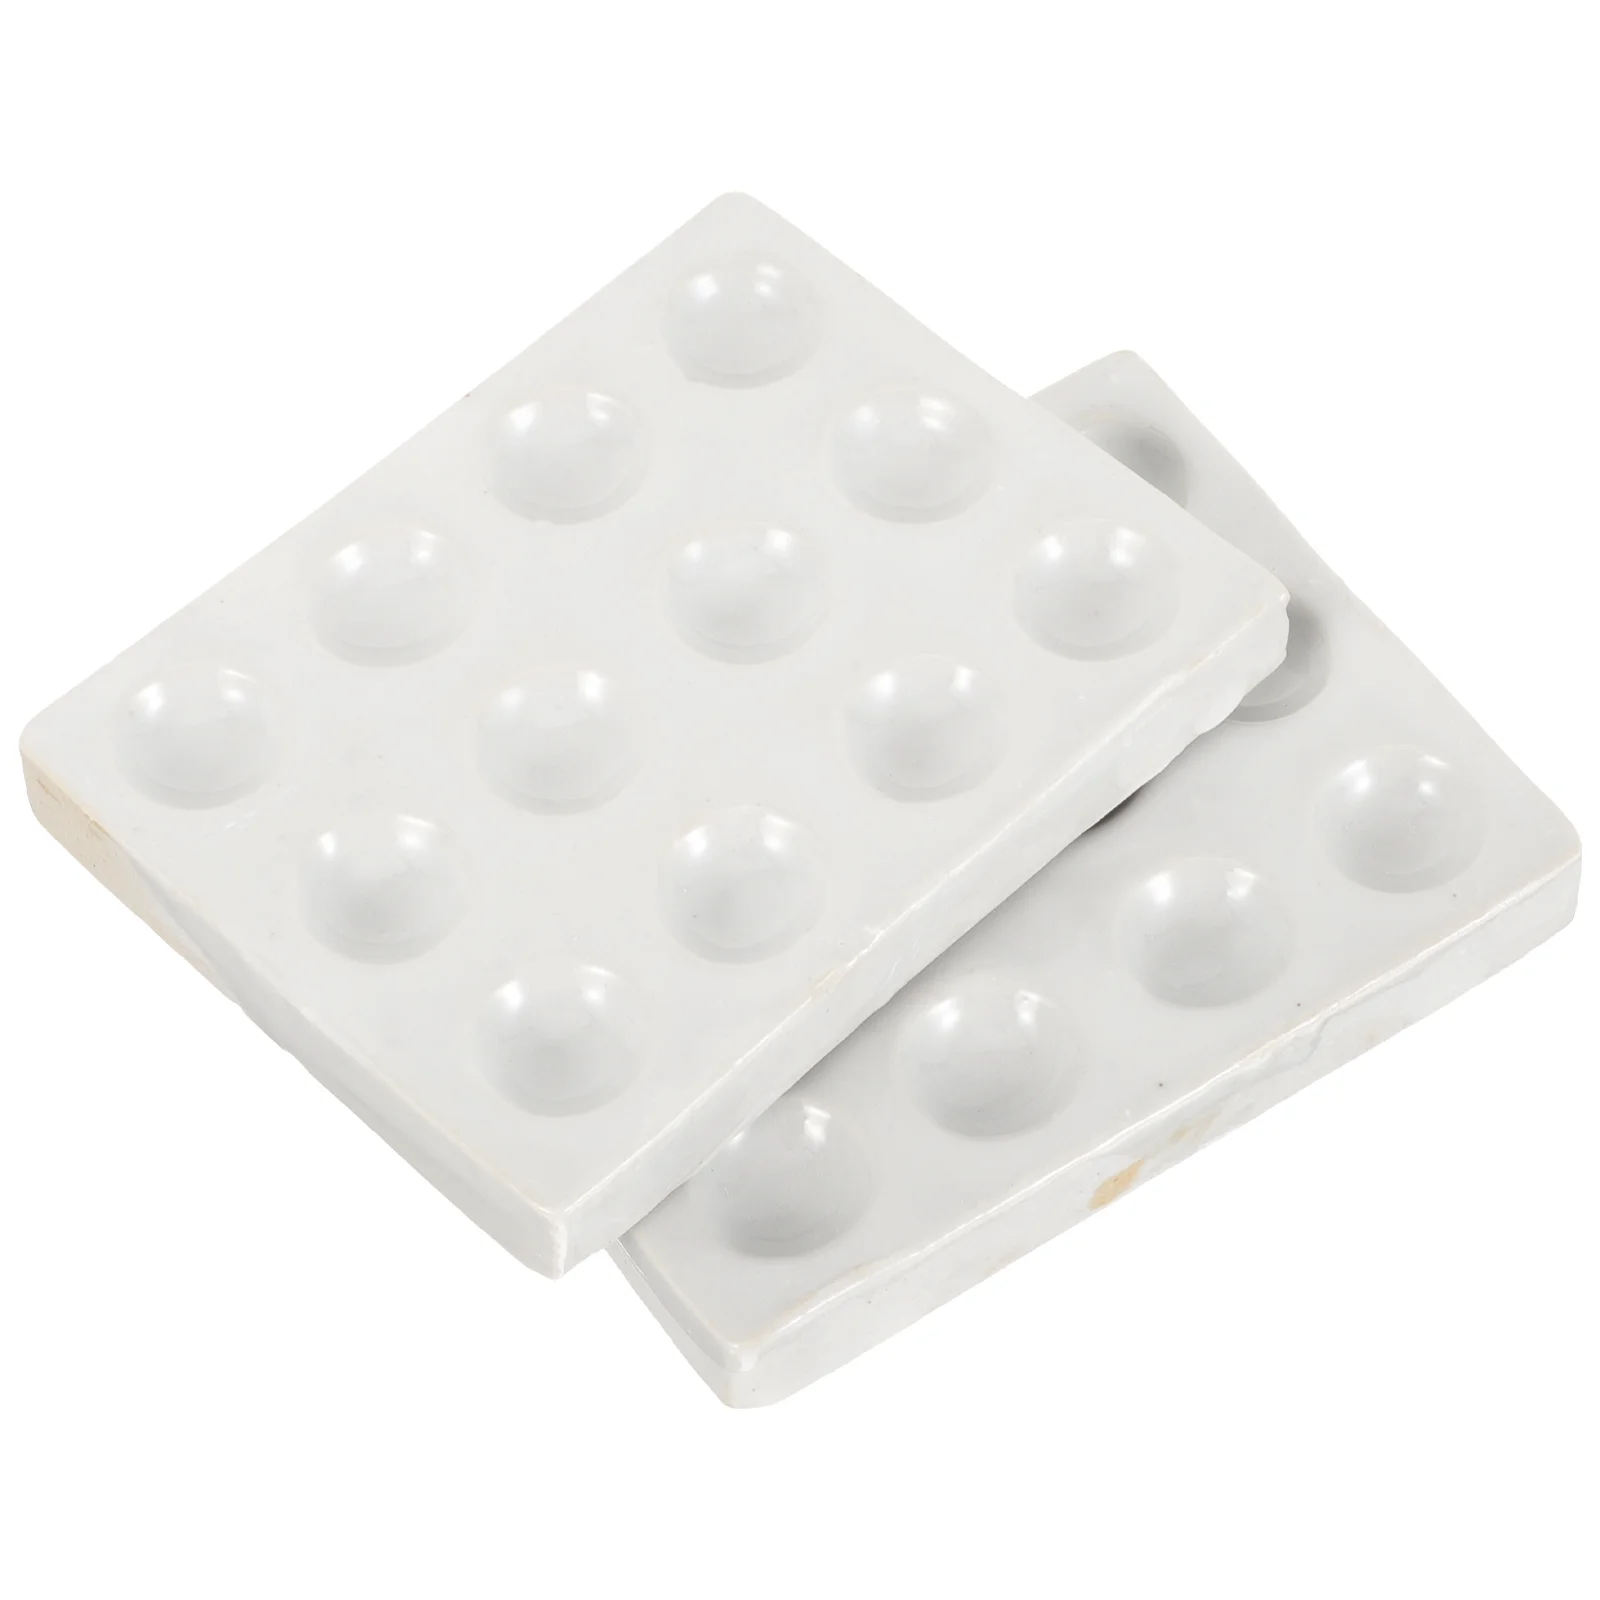 

2 Pcs Ceramic Reaction Plate Porcelain Notebook Scientific Experiment Spot Ceramics for Chemical